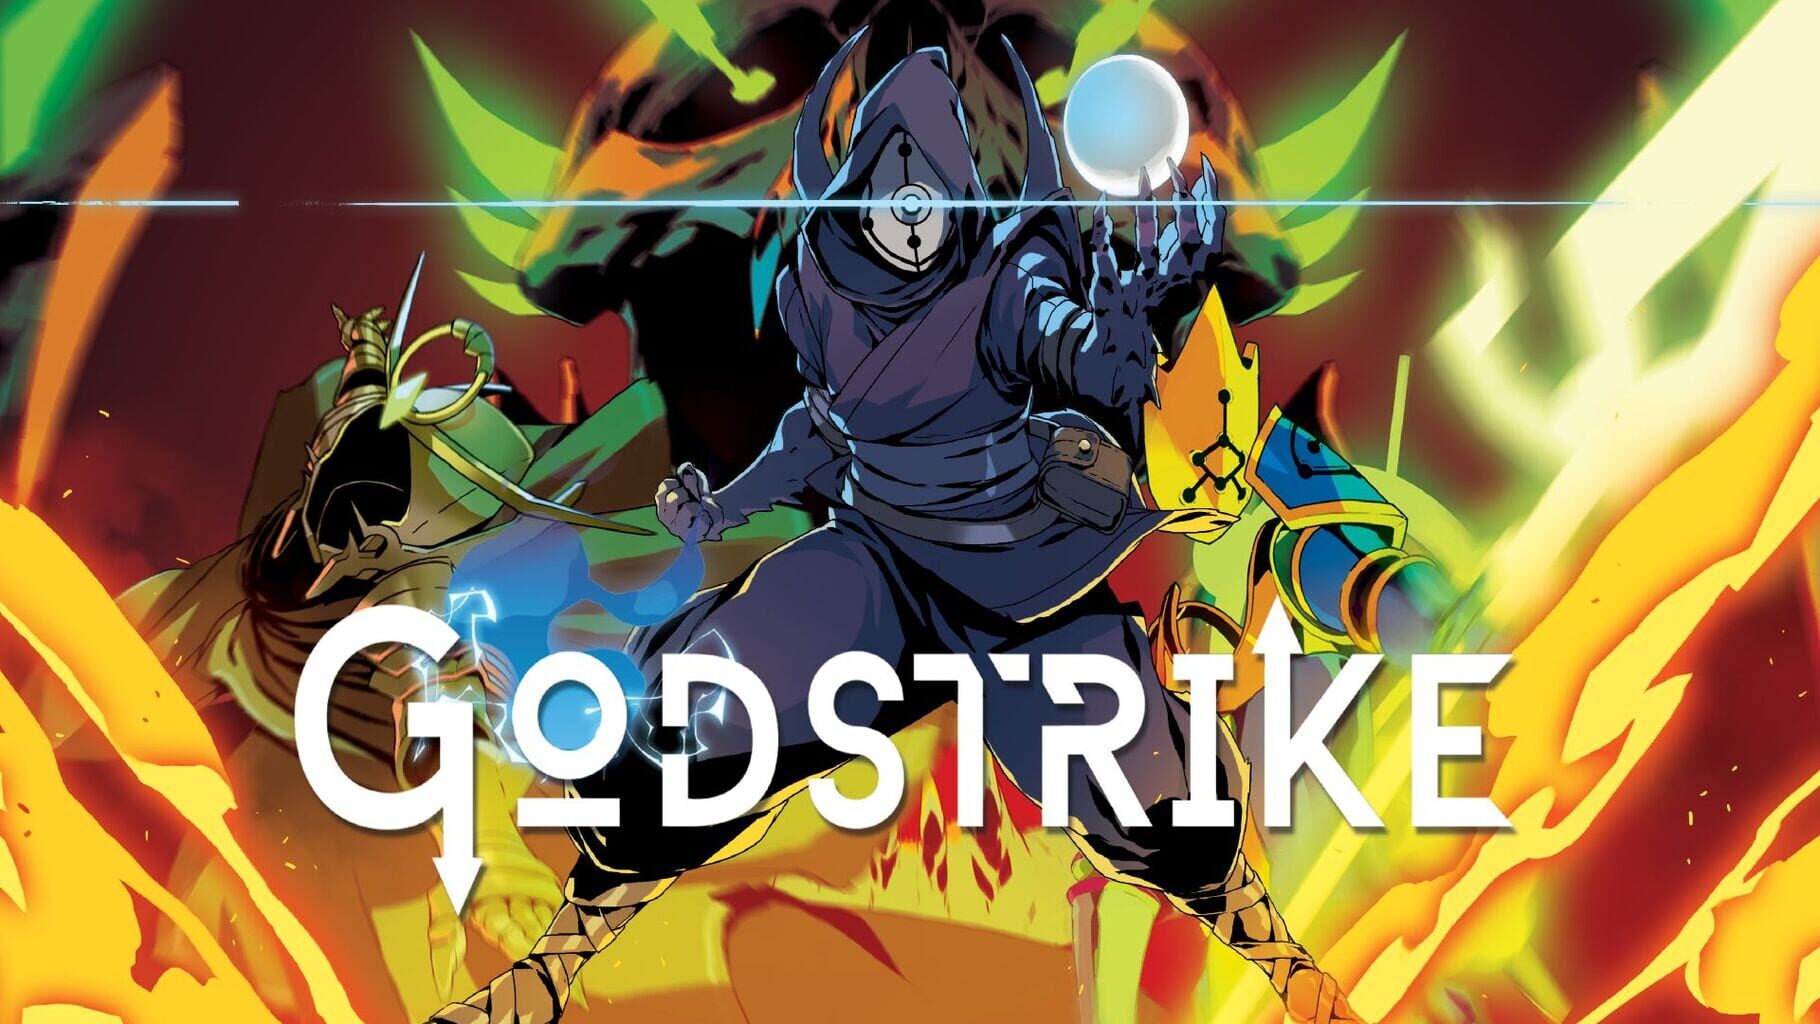 Godstrike artwork